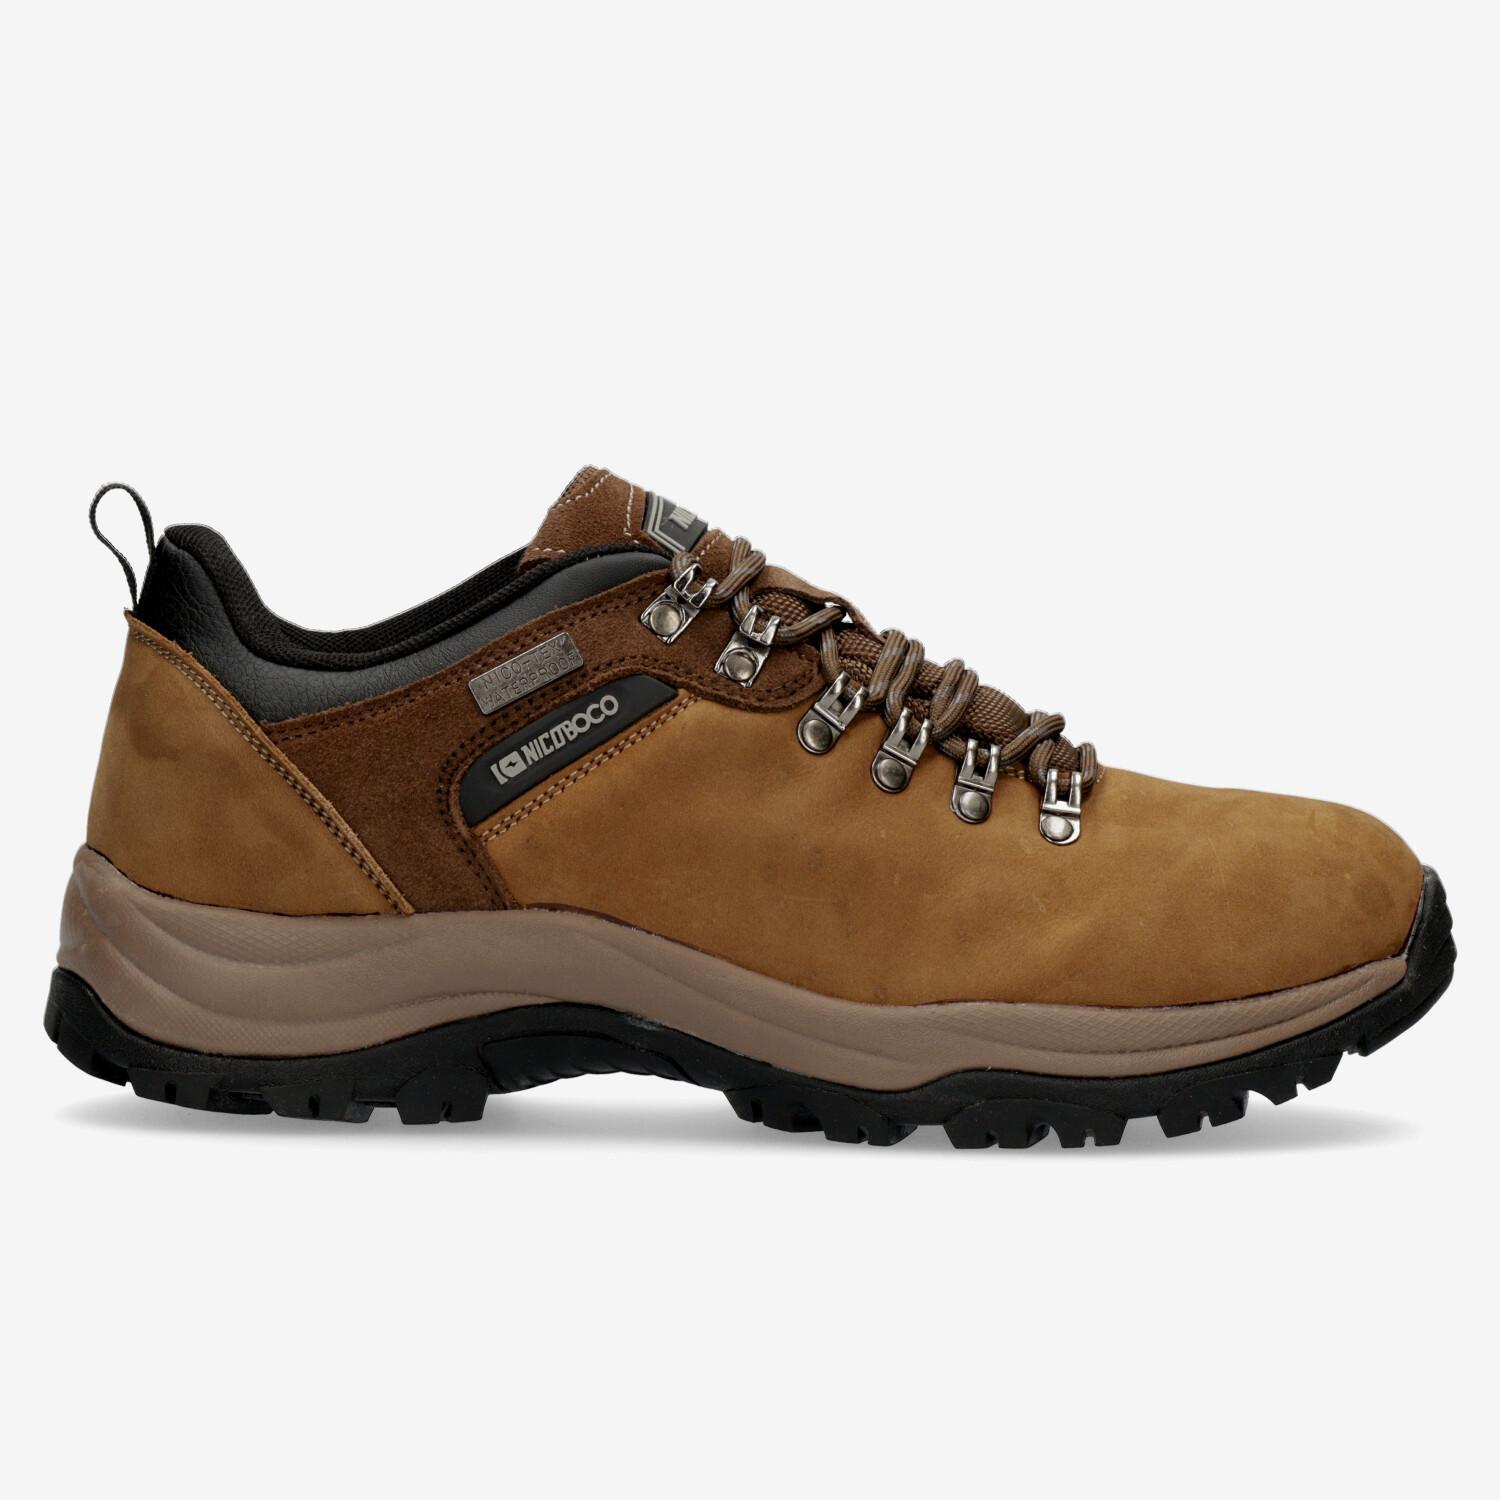 Chaussures de montagne Boriken Bekam - Marron - Chaussures de randonnée homme sports taille 45